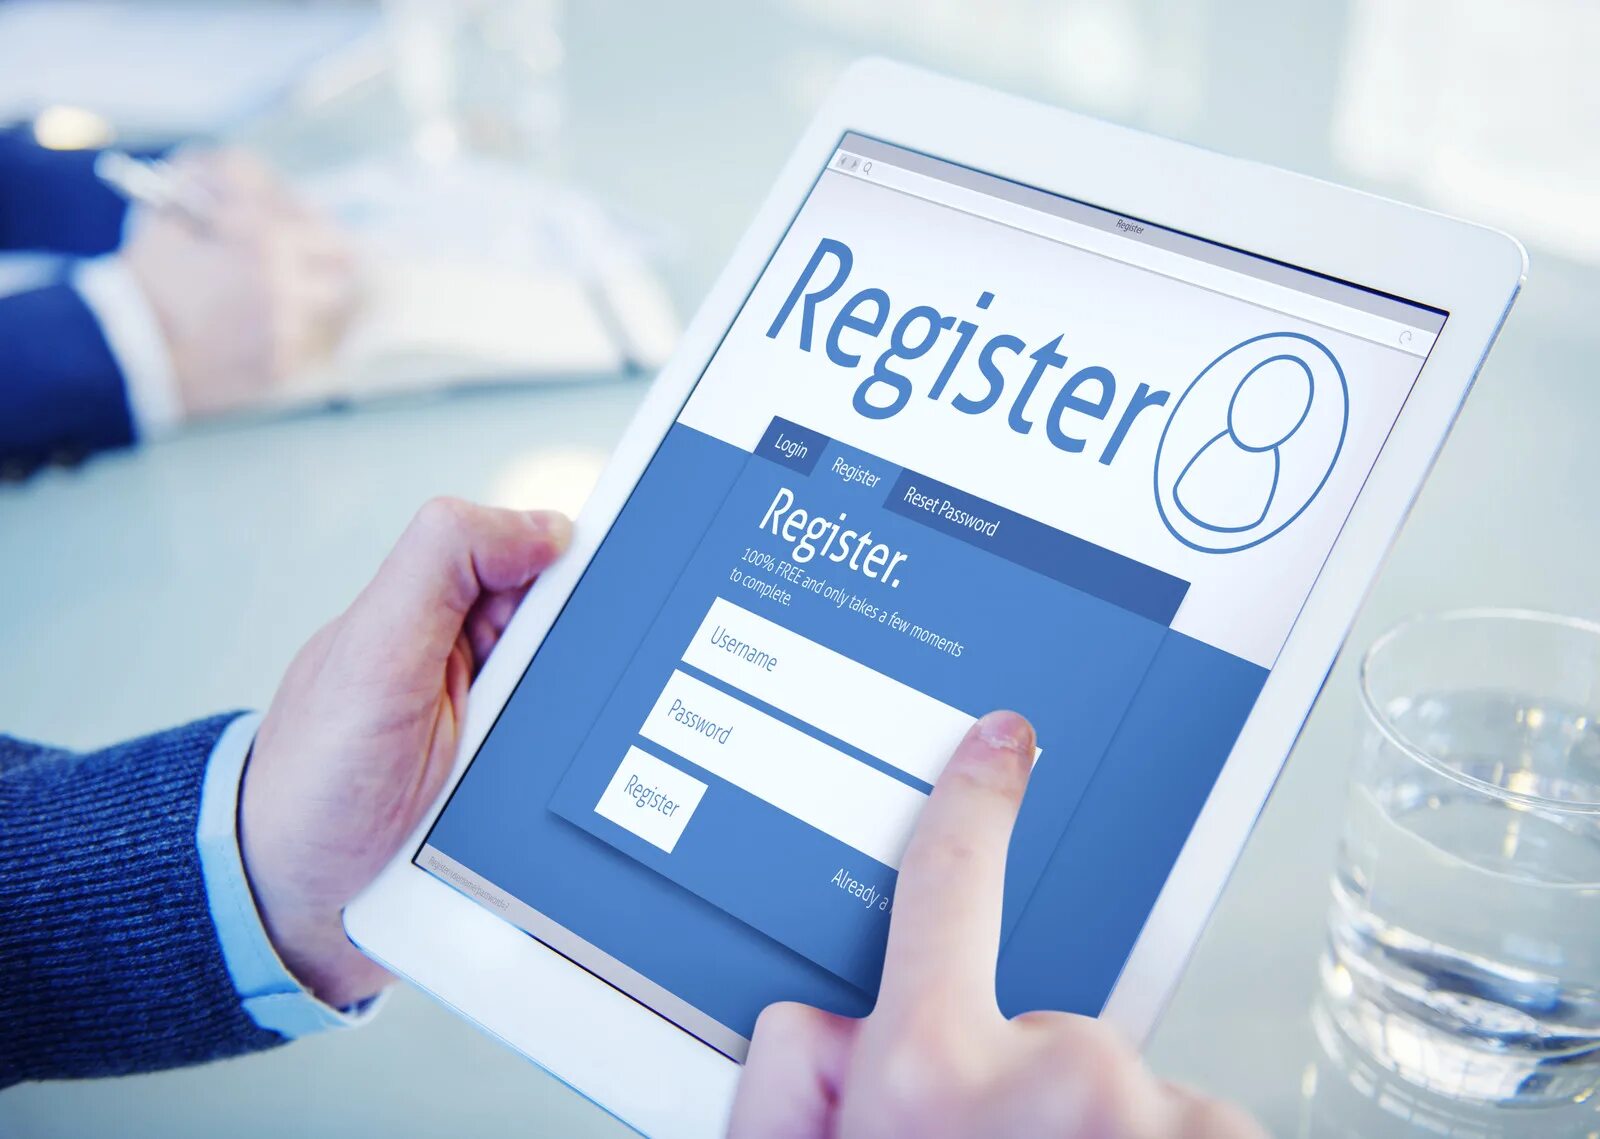 Client registration. Регистрация. Регистрация картинка. Регистрация иллюстрация. Картинка регистрация на сайте.